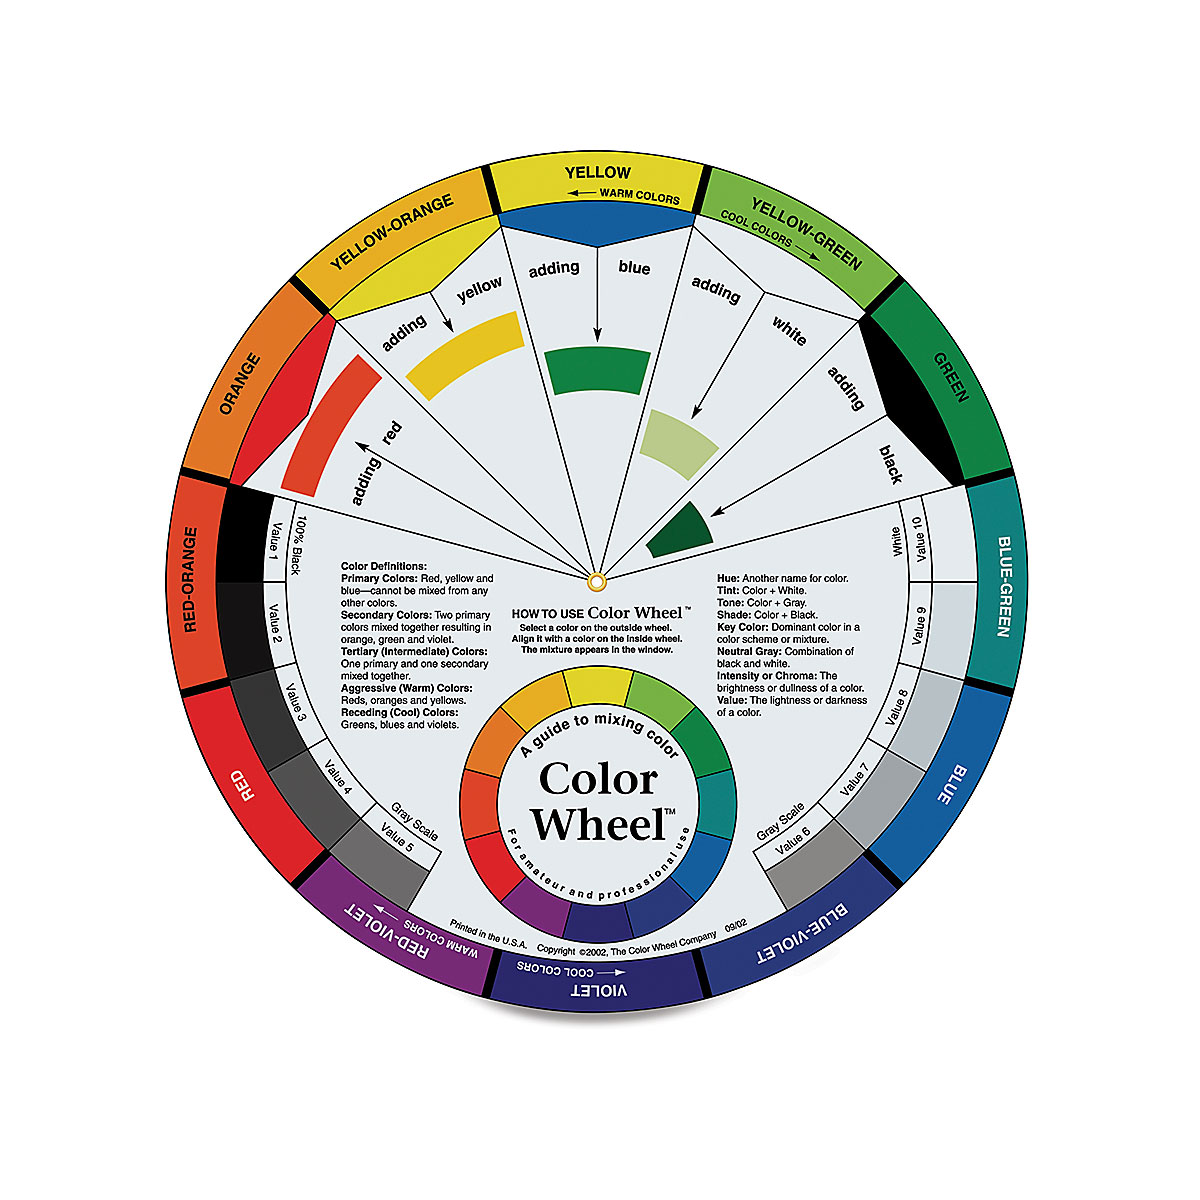 Круг в висте 6 букв. Цветовой круг. Цветовой круг сочетание цветов. Цветовой круг Иттена цветовые сочетания. Цветное колесо.